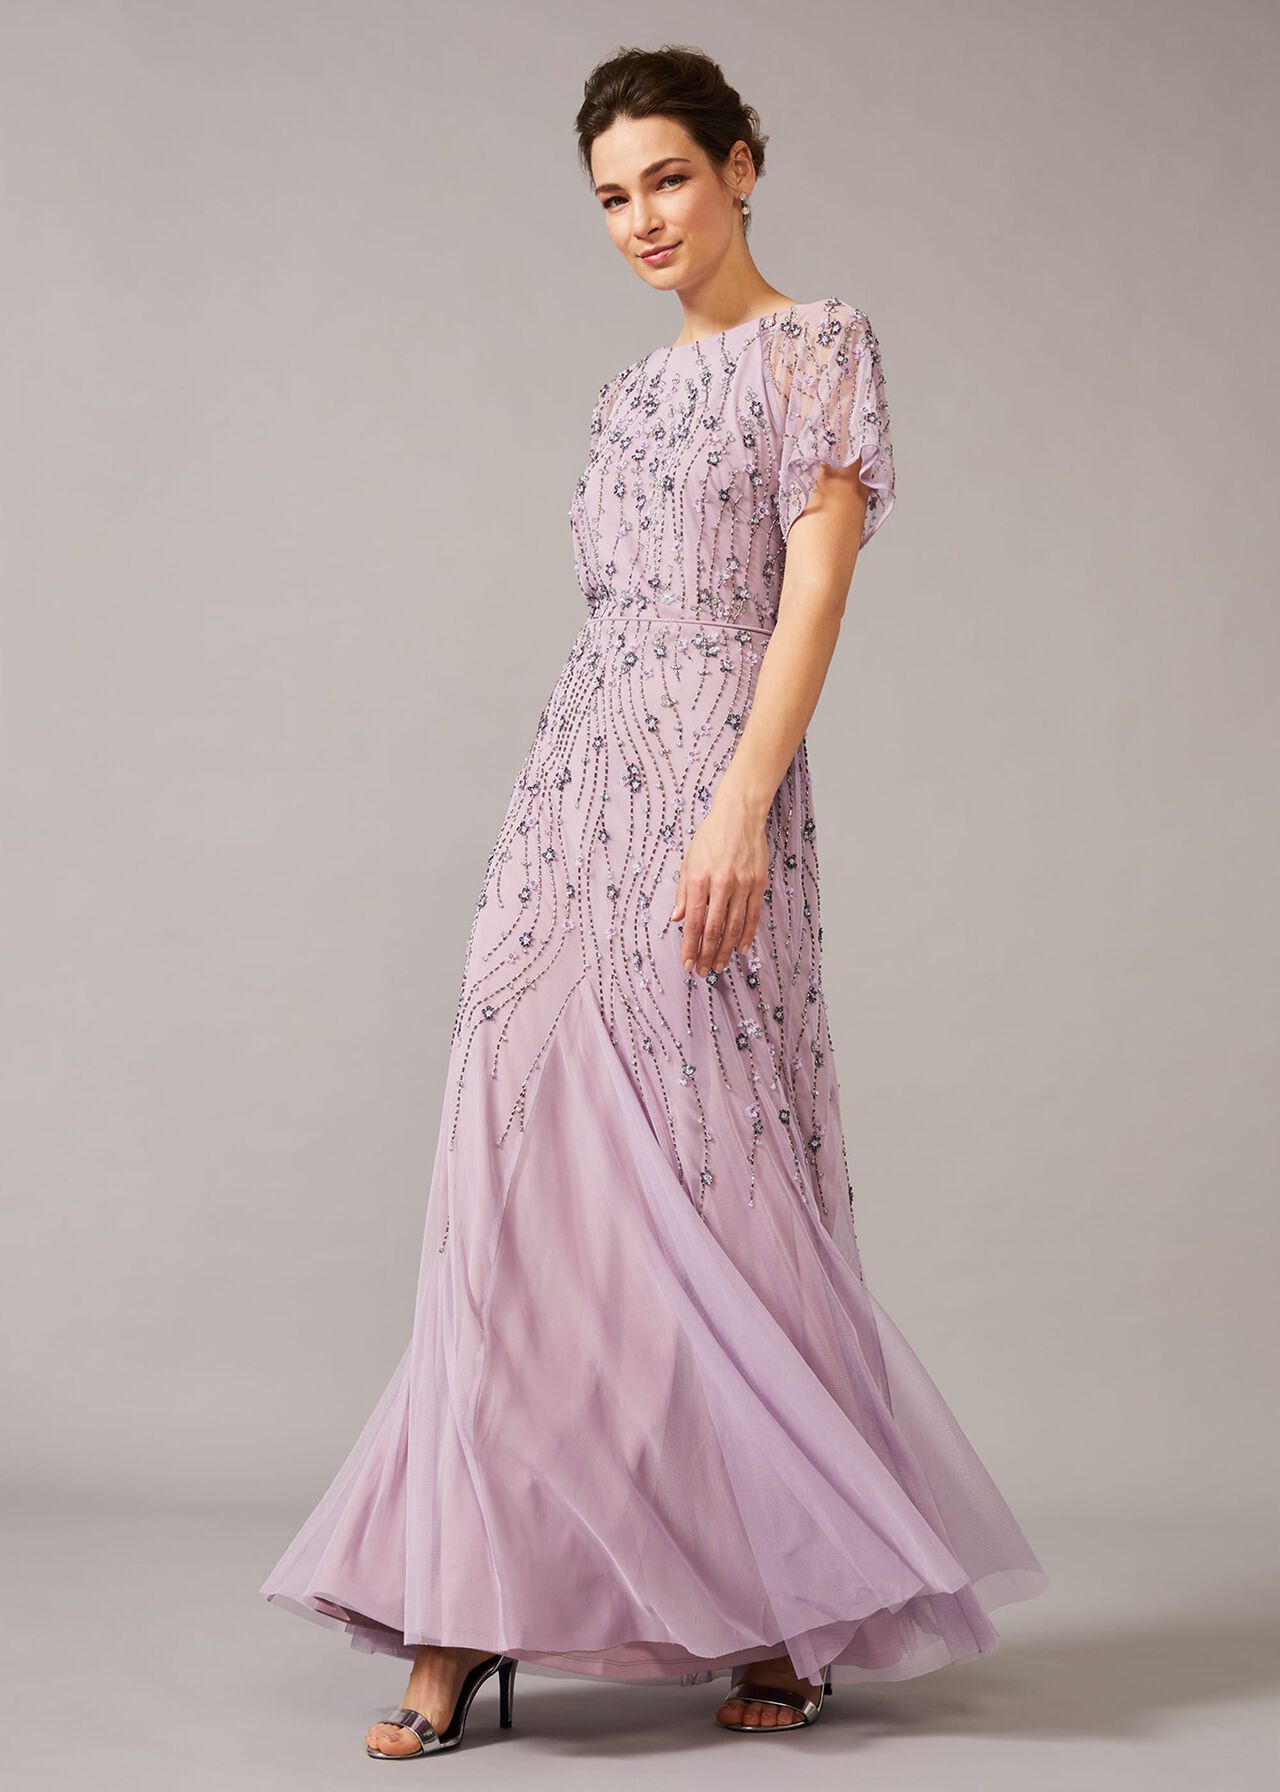 Florisa Embellished Dress